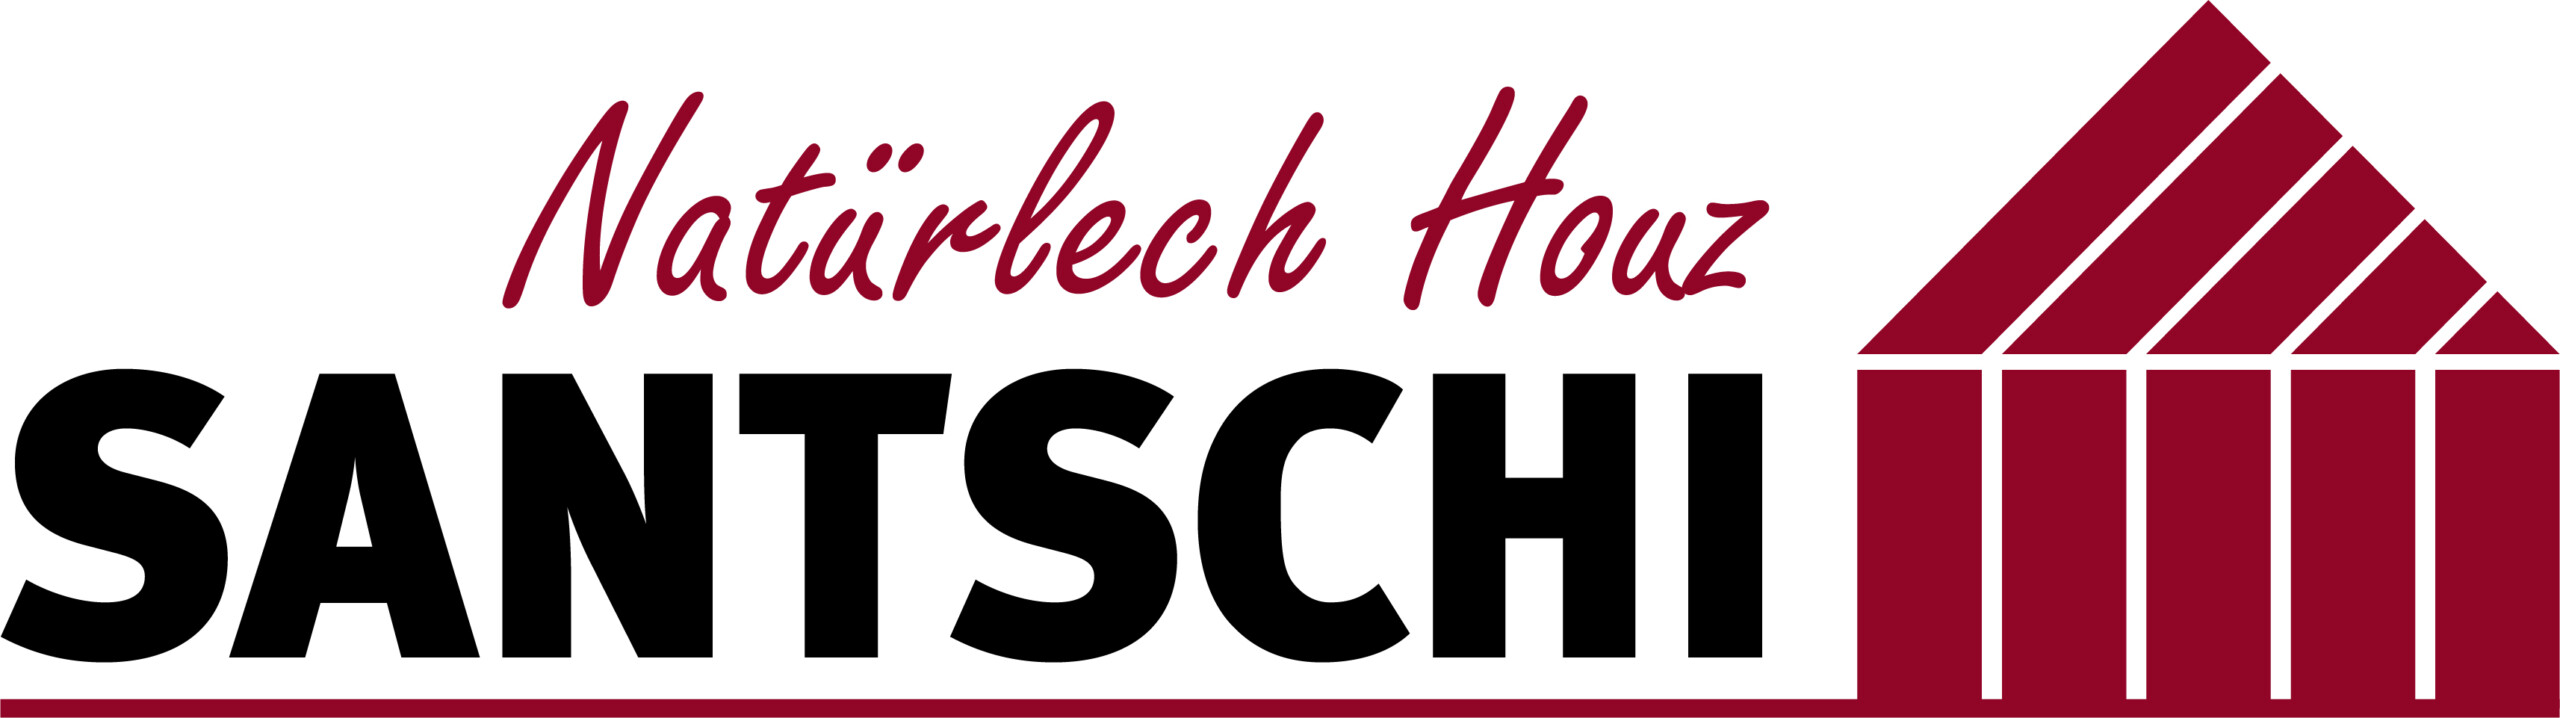 Santschi Holzbau Logo